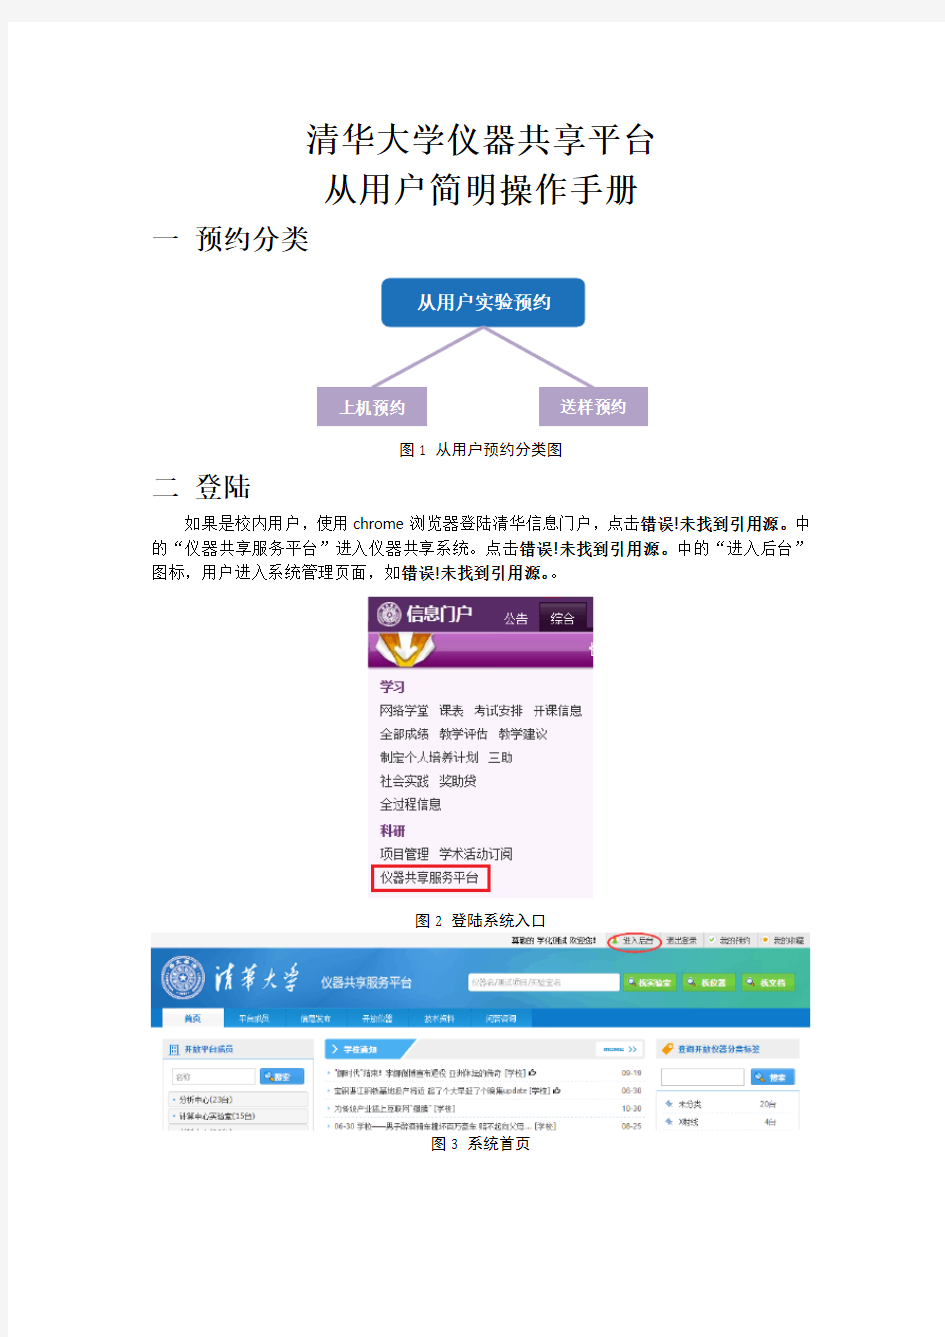 清华大学仪器共享平台从用户简明操作手册